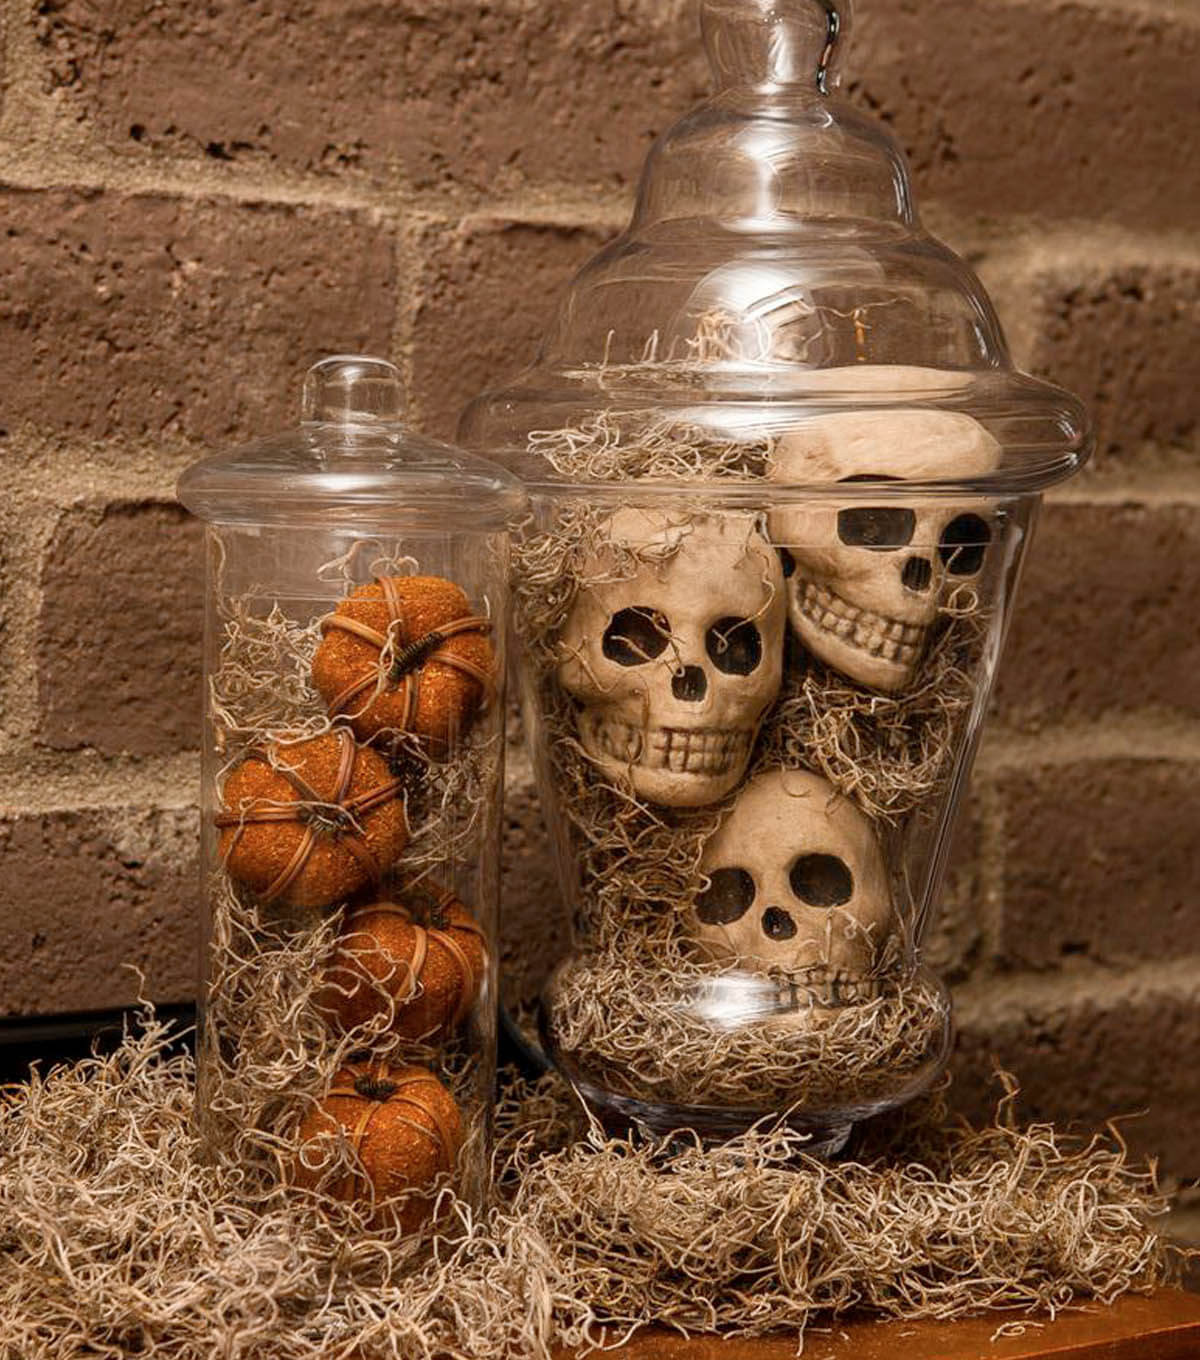 DIY Halloween Decorations Indoor
 Spooky Indoor Halloween Decoration Ideas – Festival Around